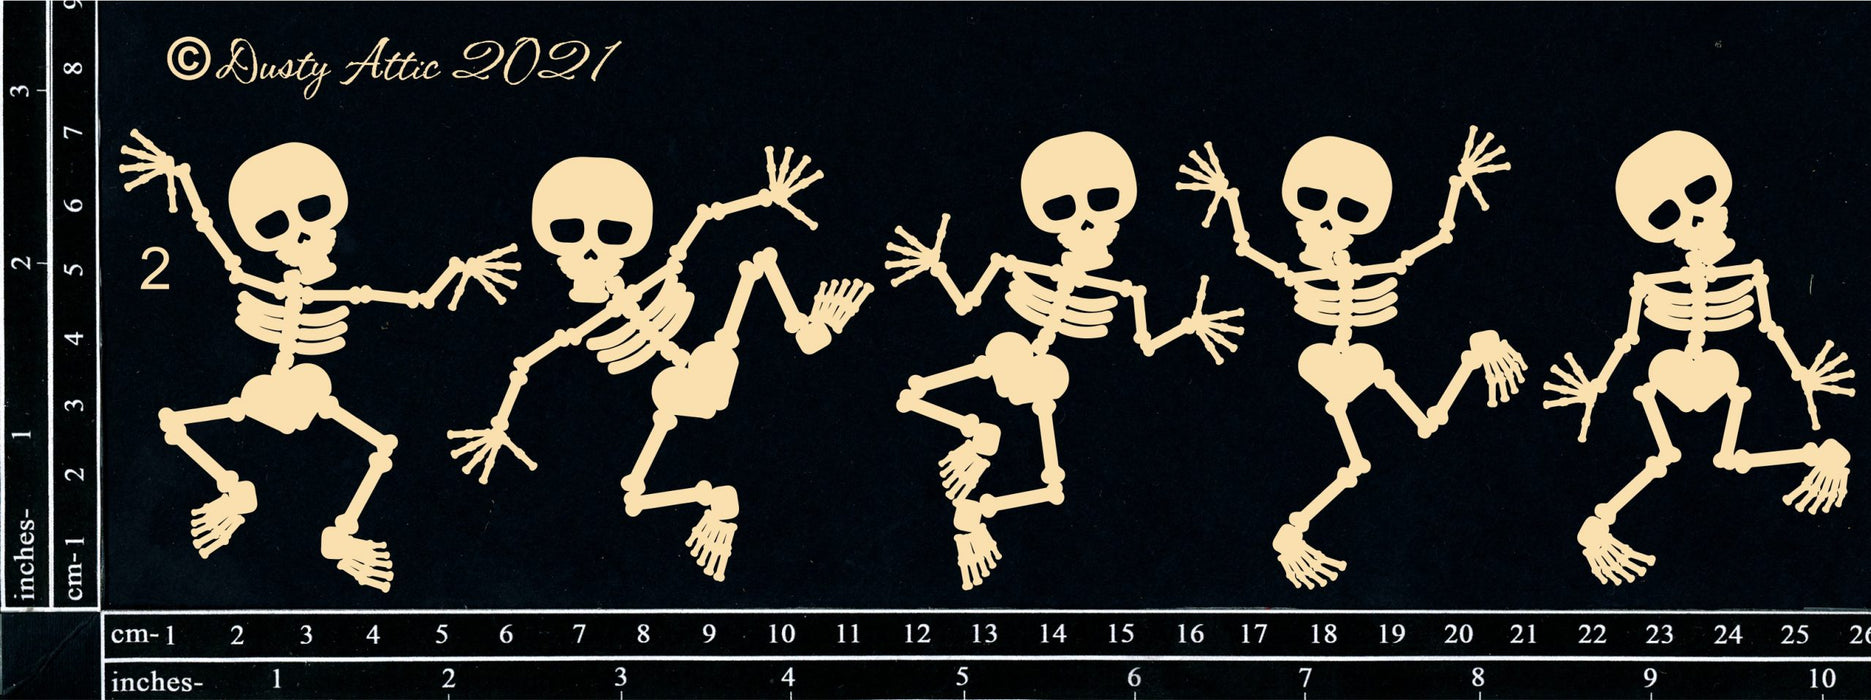 Dancing Skeletons #2